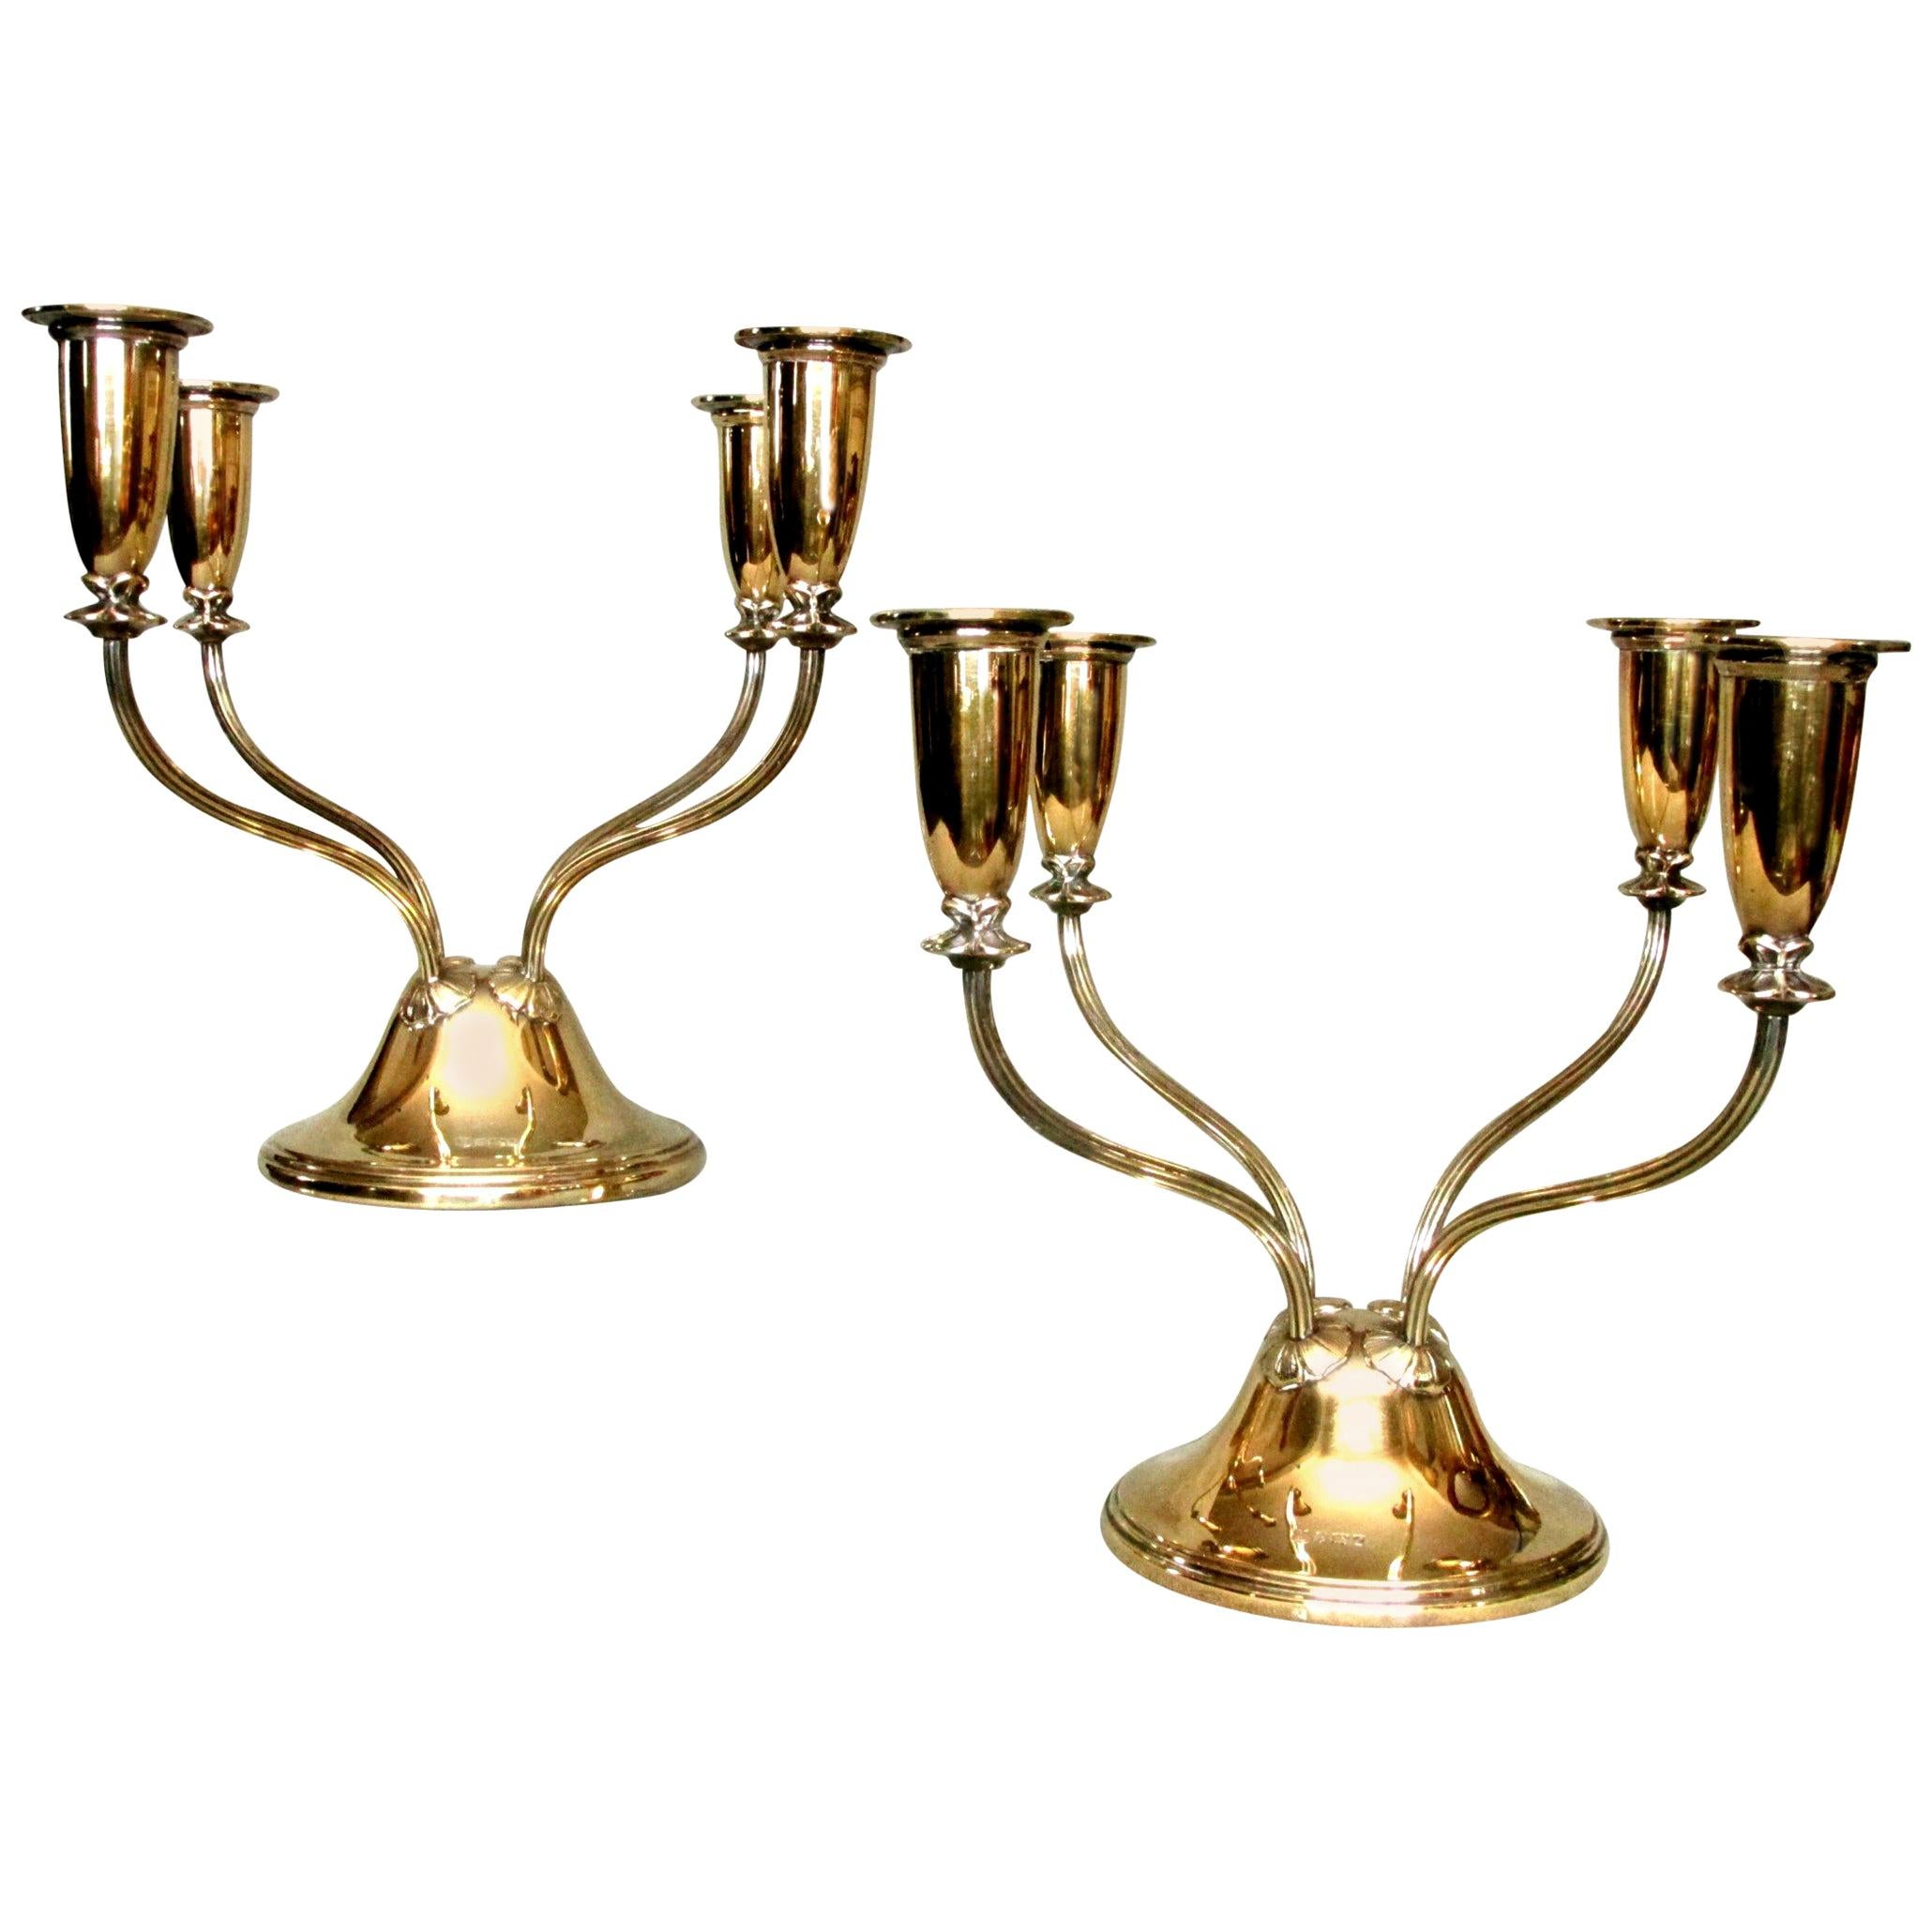 Exceptionnelle paire de candélabres en argent doré de style mi-siècle moderne, daté de 1960